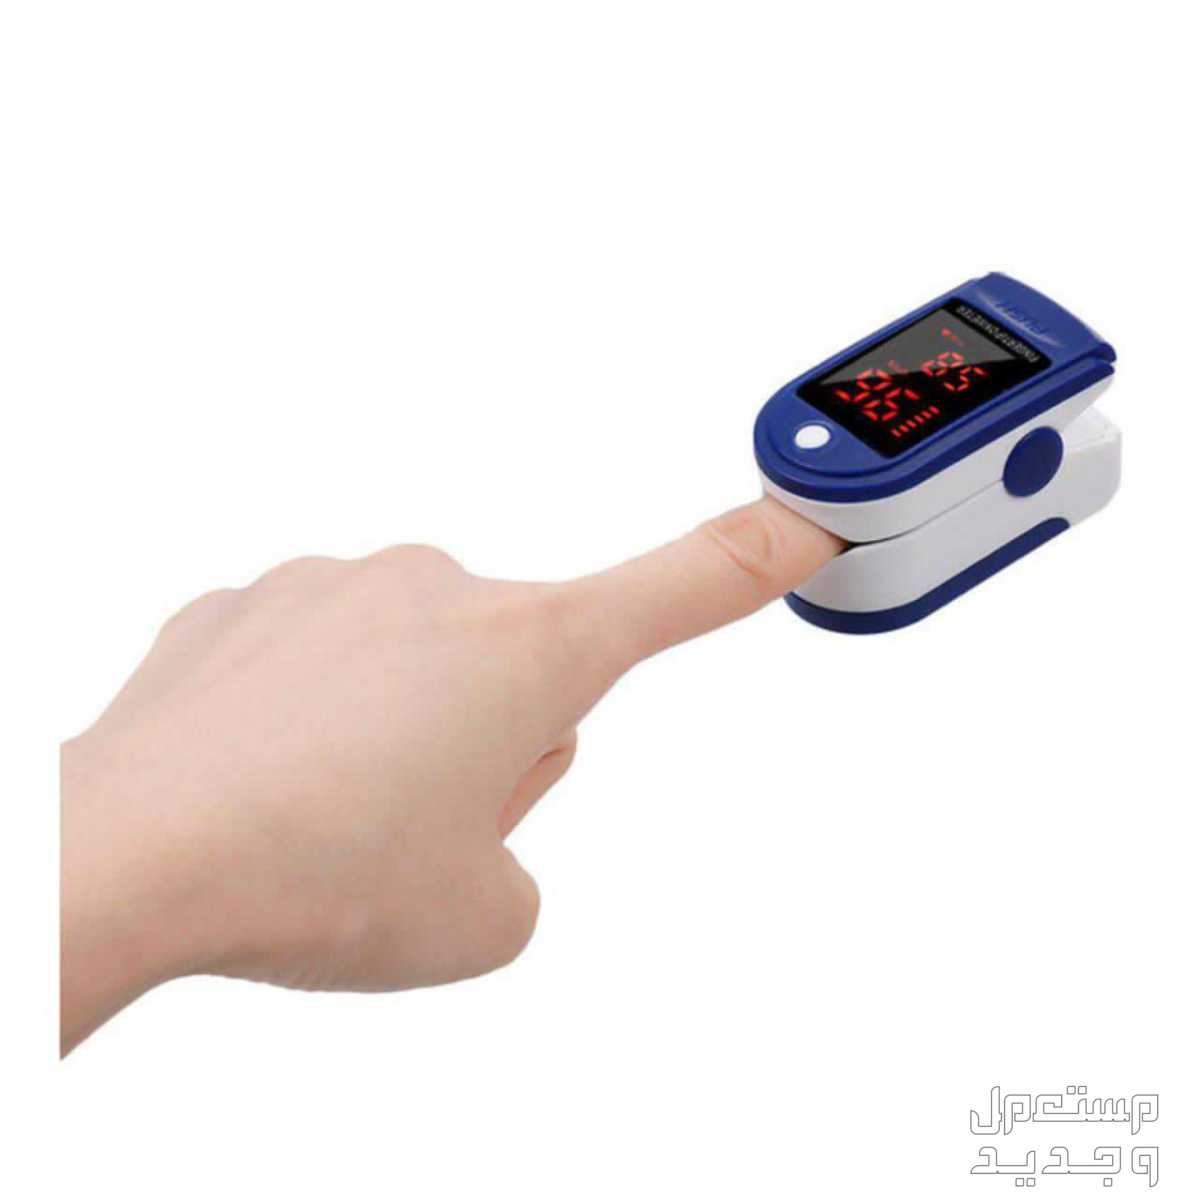 *اقدم لكم جهاز قياس الاكسجين بالدم ونبضات القلب* جهاز قياس نبضات القلب( pulse) ونسبة الأكسجين في الدم SPO2 (التأكسج) عن طريق الأشعة تحت الحمراء ويستخدم في أغلب المستشفيات والمراكز الصحية.  *